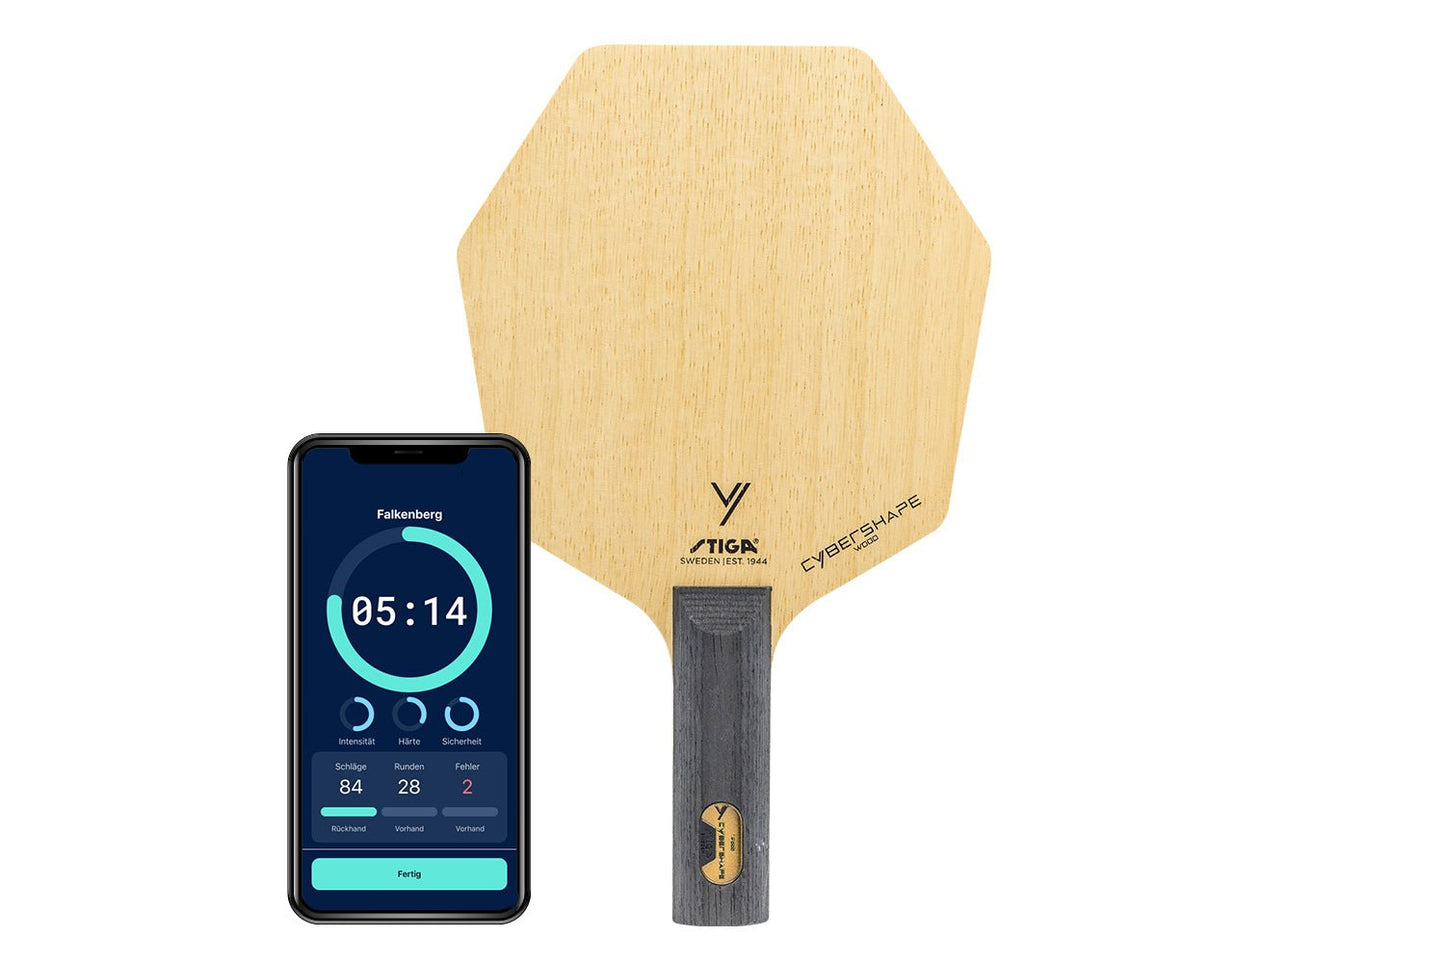 Stiga Cybershape Wood Tischtennisschläger mit geradem Griff und Smartphone zeigt Daten des Schlägers vor weißem Hintergrund